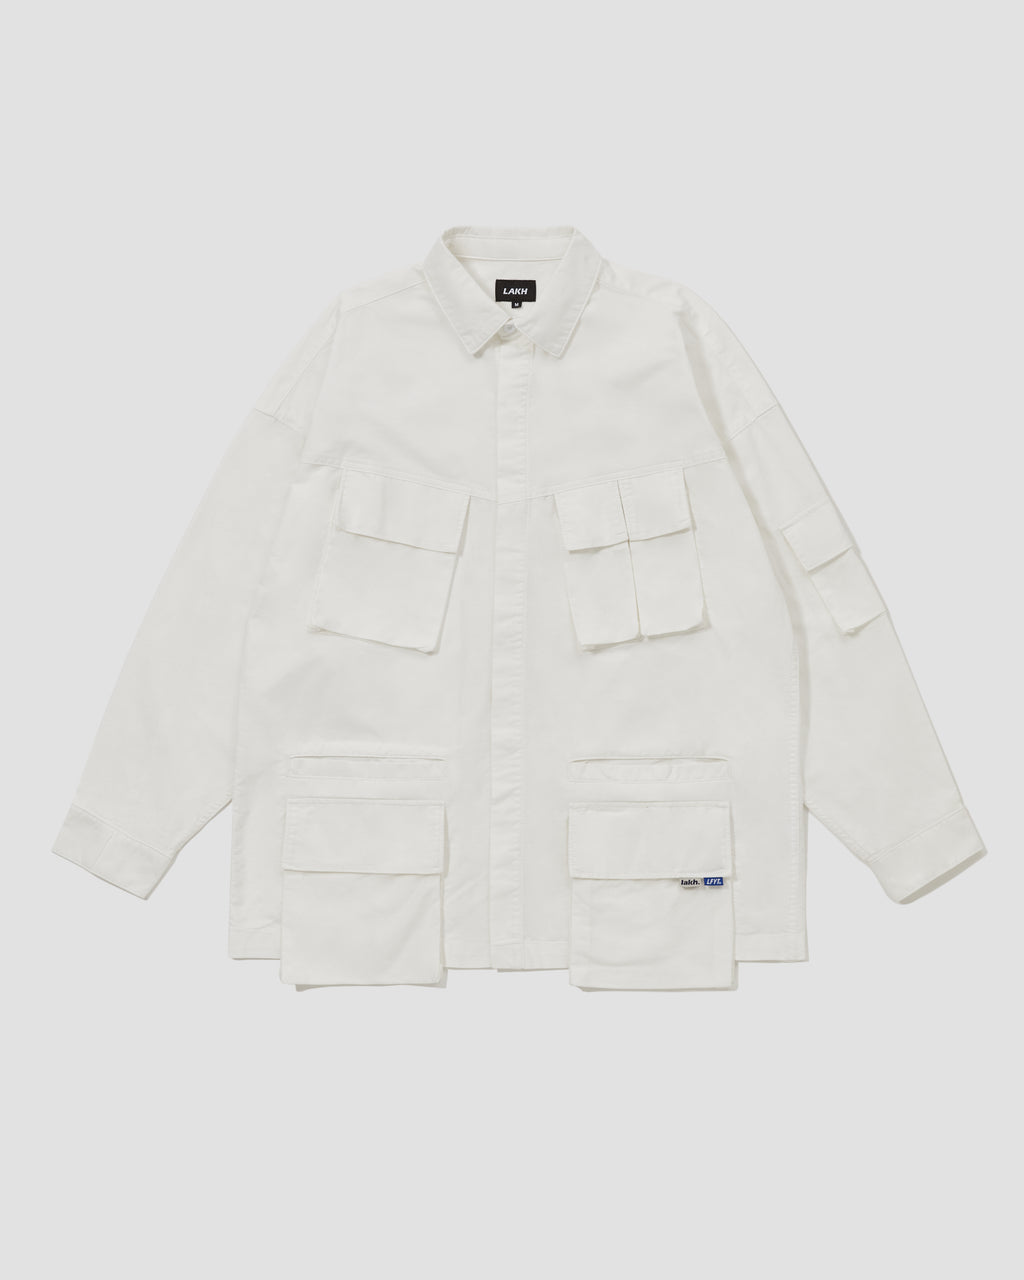 LAKH X LFYT L/S Ten Pockets Oxford Shirts - White